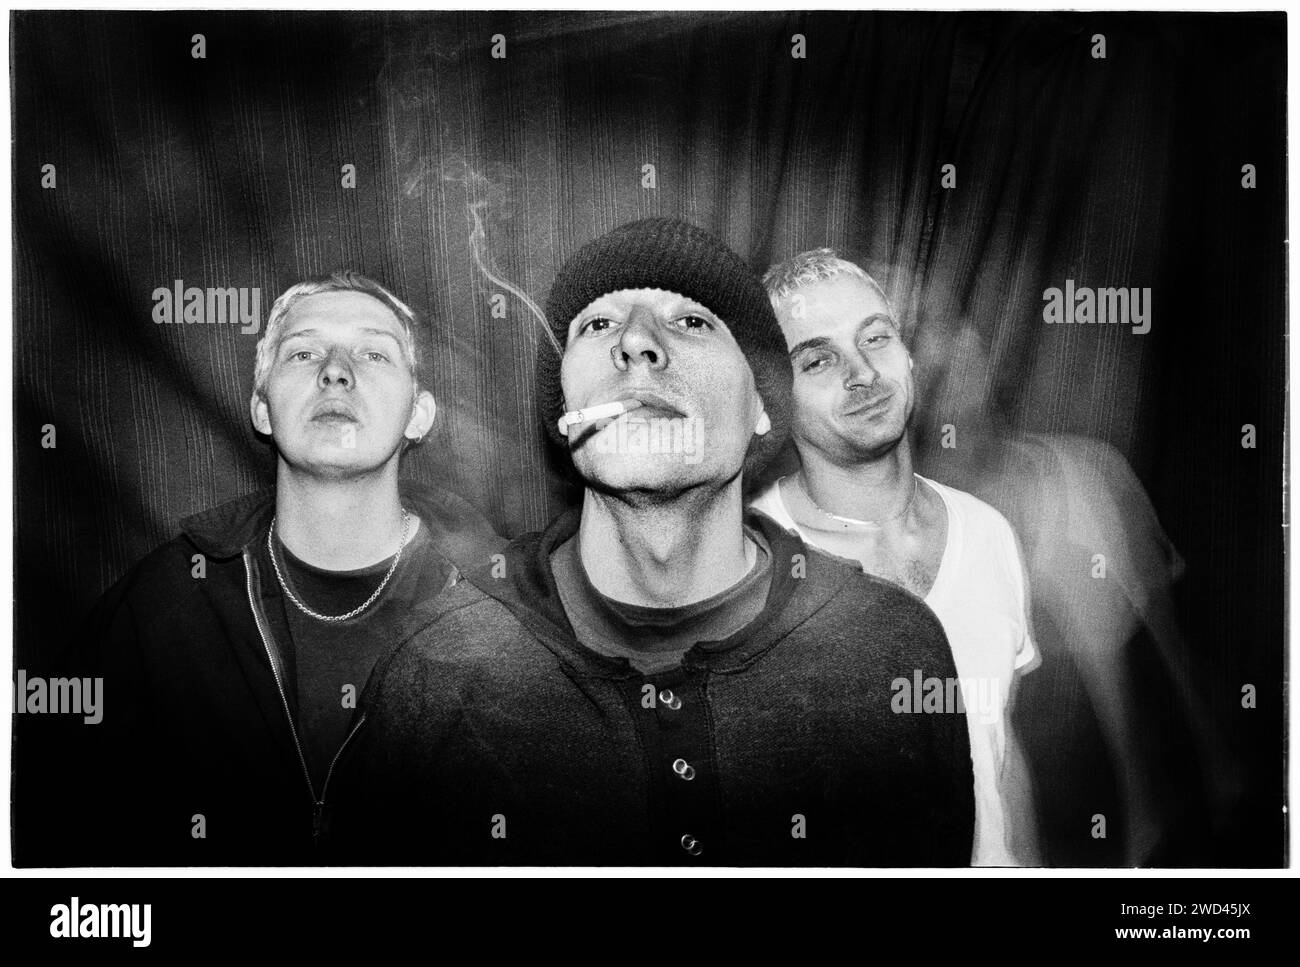 La band punk S*M*A*S*H (SMASH) fotografò il backstage a Newport TJs, Regno Unito, il 13 ottobre 1994. Foto: Rob Watkins. INFO: SMASH, una band punk britannica degli anni '90, ha abbracciato l'etica del fai da te. Il loro suono energetico, alimentato da testi politicamente carichi, trovò un seguito. Inni come "i Want to Kill Somebody" e "Shame" hanno catturato lo spirito ribelle della scena punk durante i loro anni di attività. Foto Stock